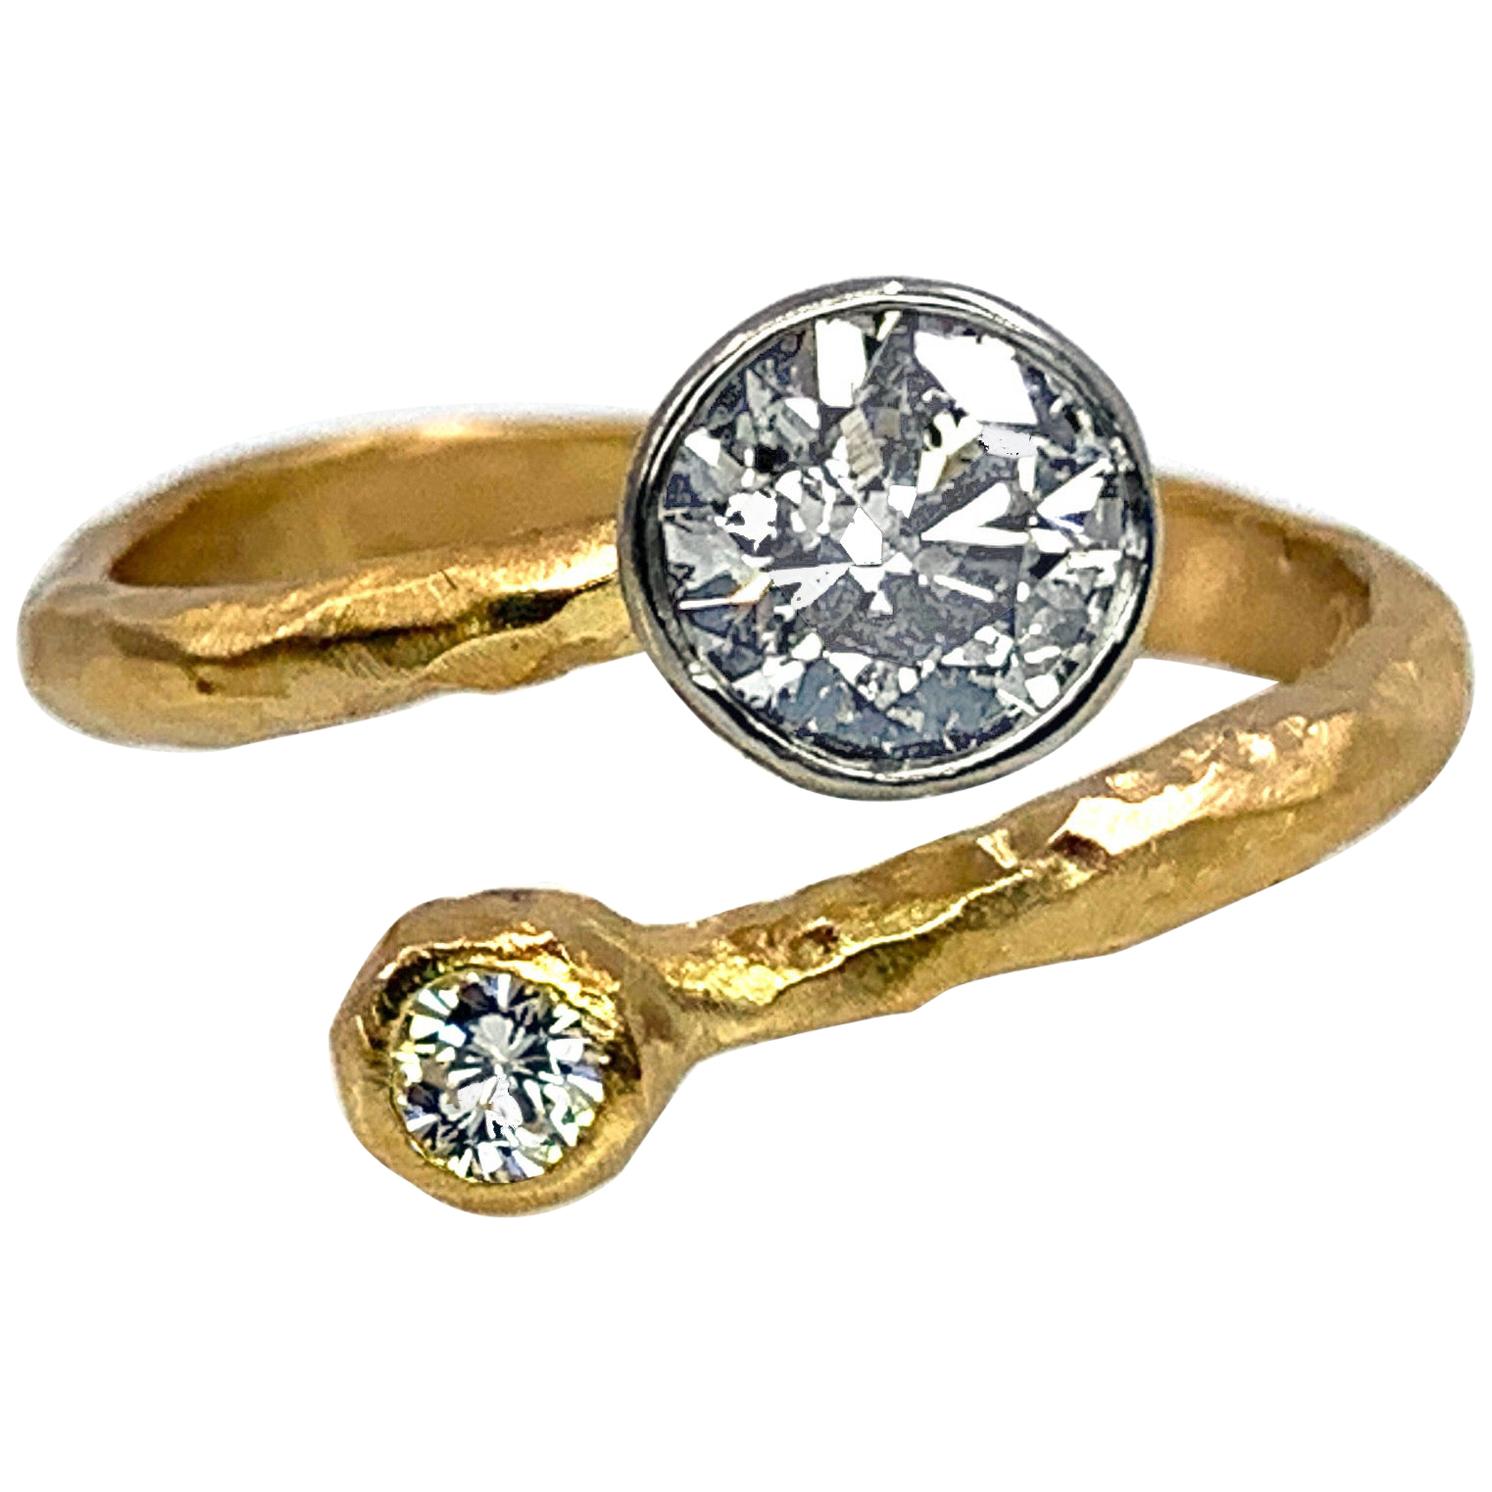 "Wabi-Sabi" Bypass Ring Featuring a 0.91 Carat Diamond in Brushed 18 Karat Gold